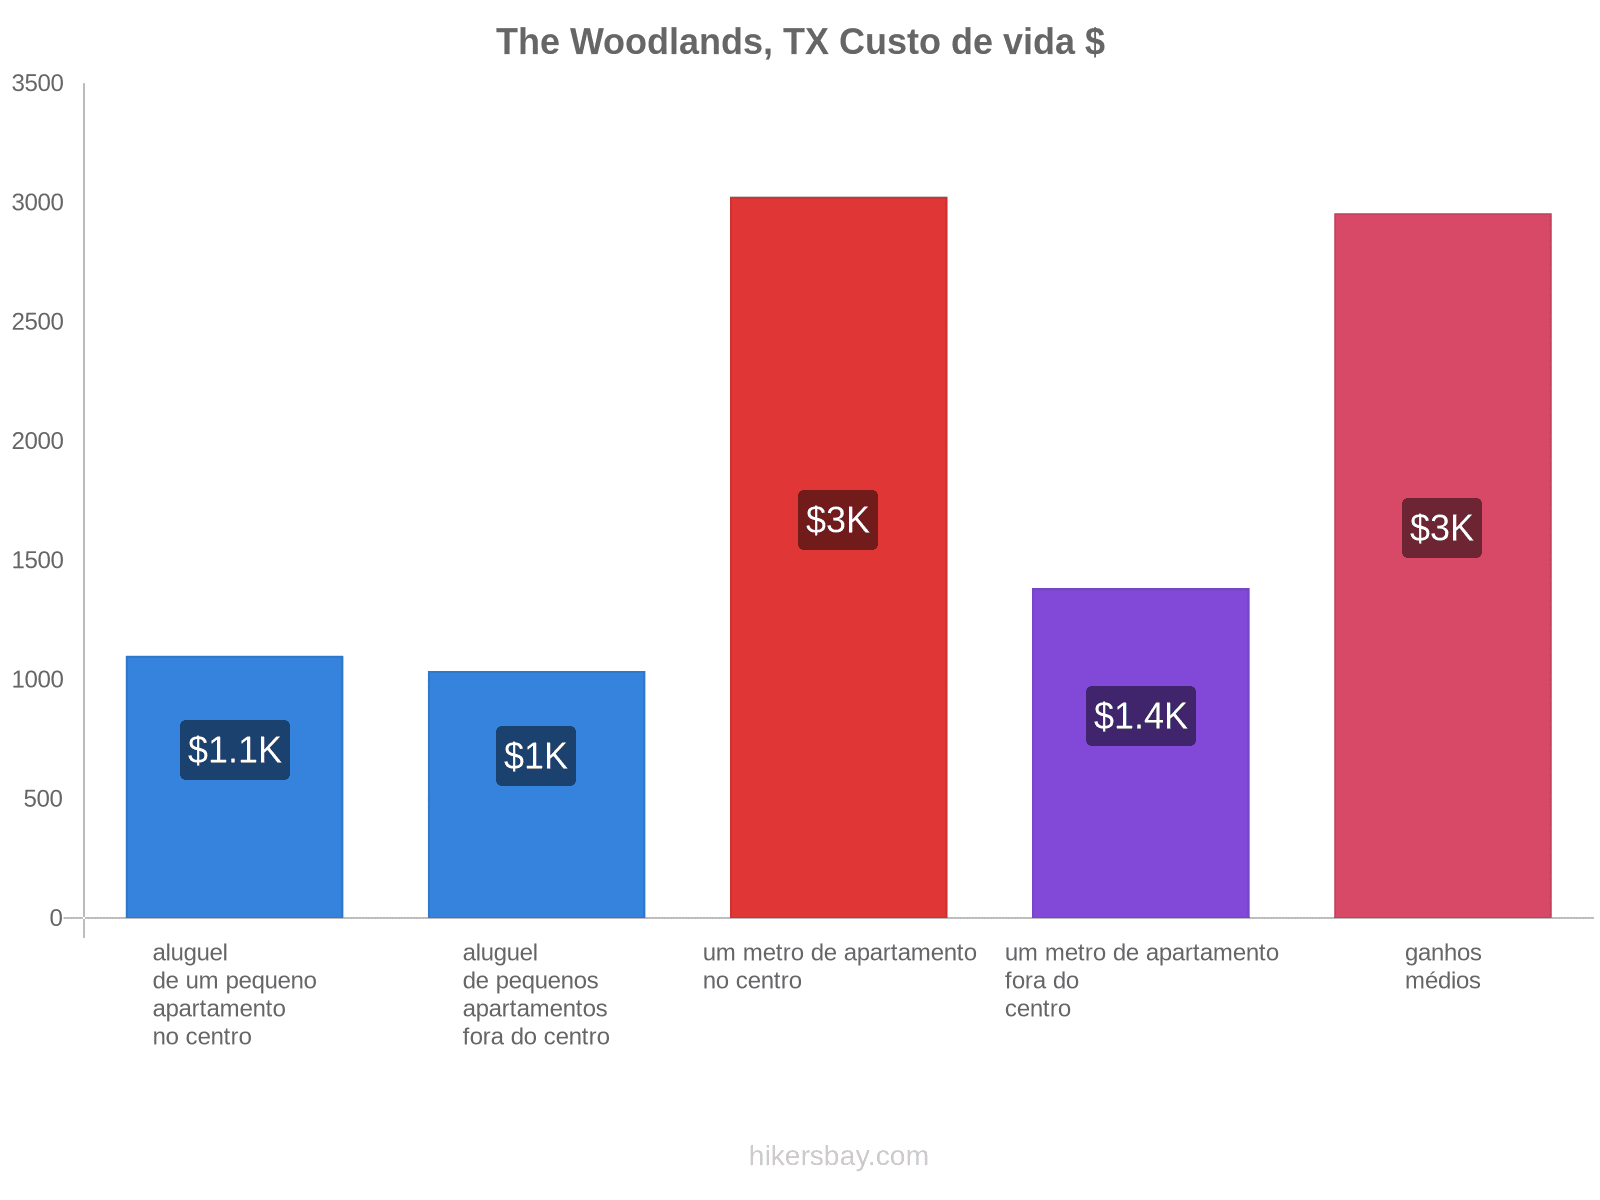 The Woodlands, TX custo de vida hikersbay.com